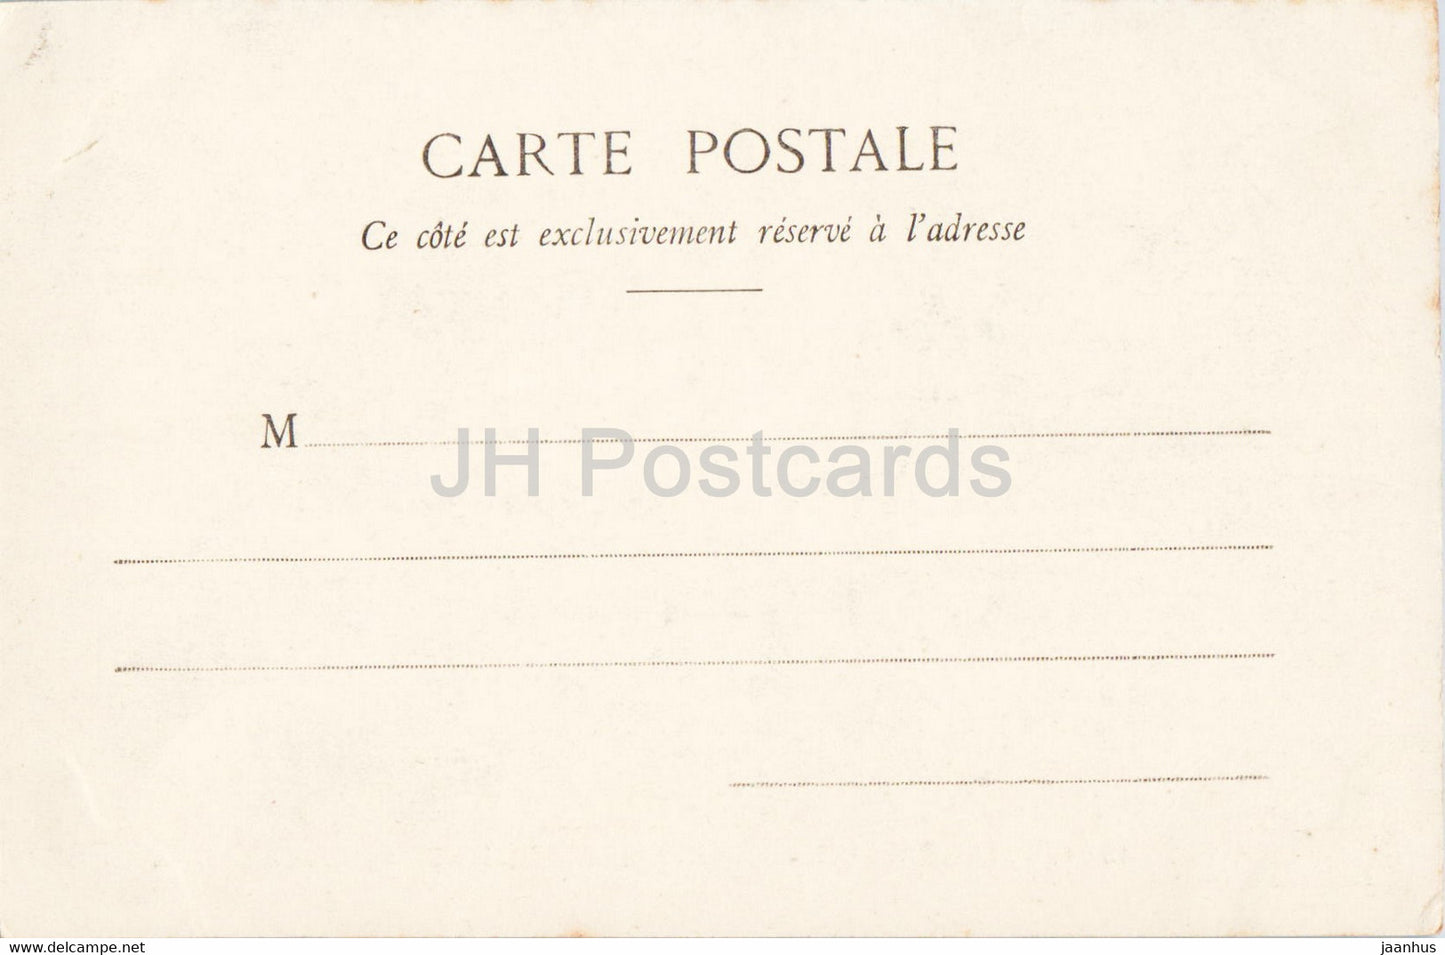 Marseille - Rue Noailles et Allees de Meillans - horse carriage - 1864 - old postcard - France - unused